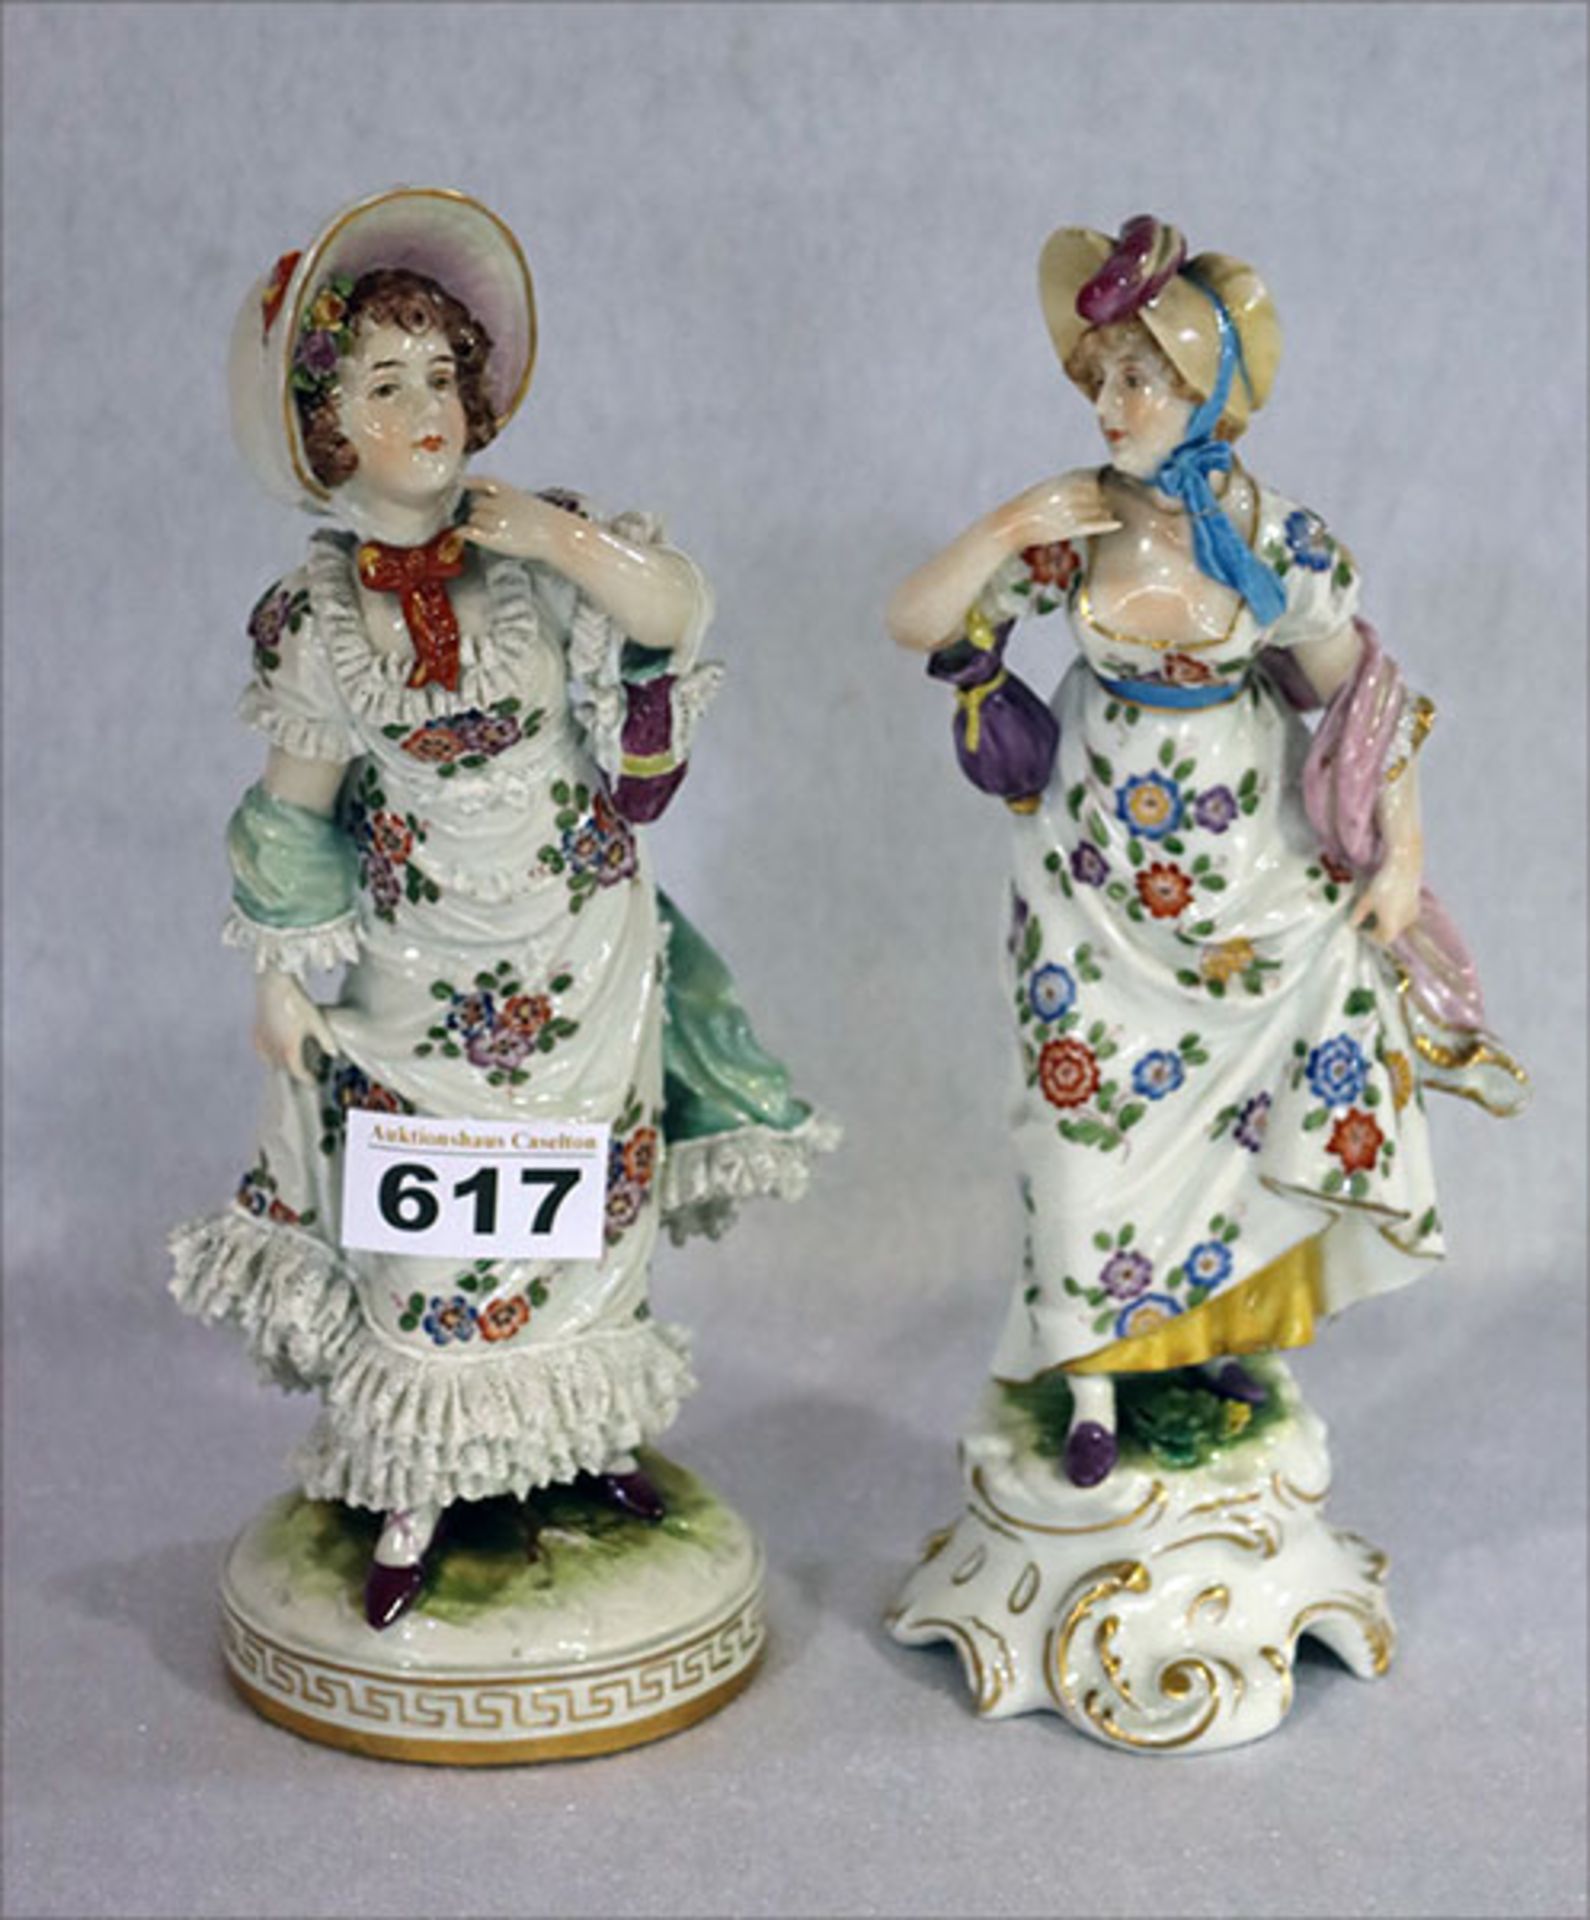 2 Porzellan Figuren 'Damen', eine mit Spitzendekor, beide bemalt, teils bestossen, H 23 cm